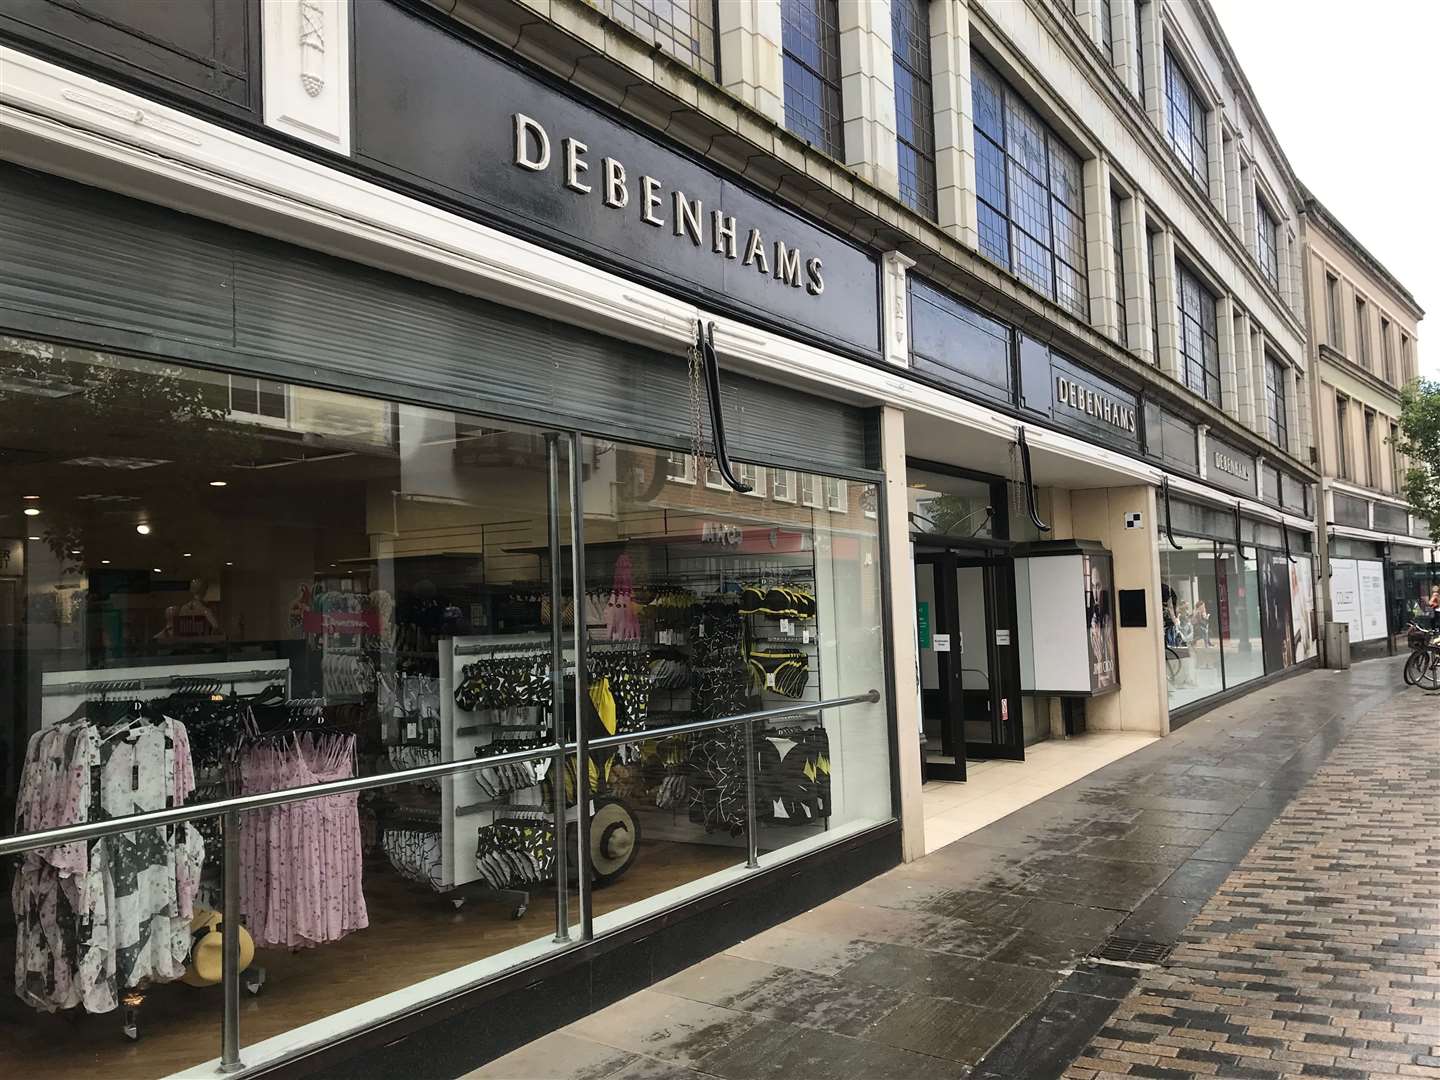 Debenhams in Canterbury is closing down